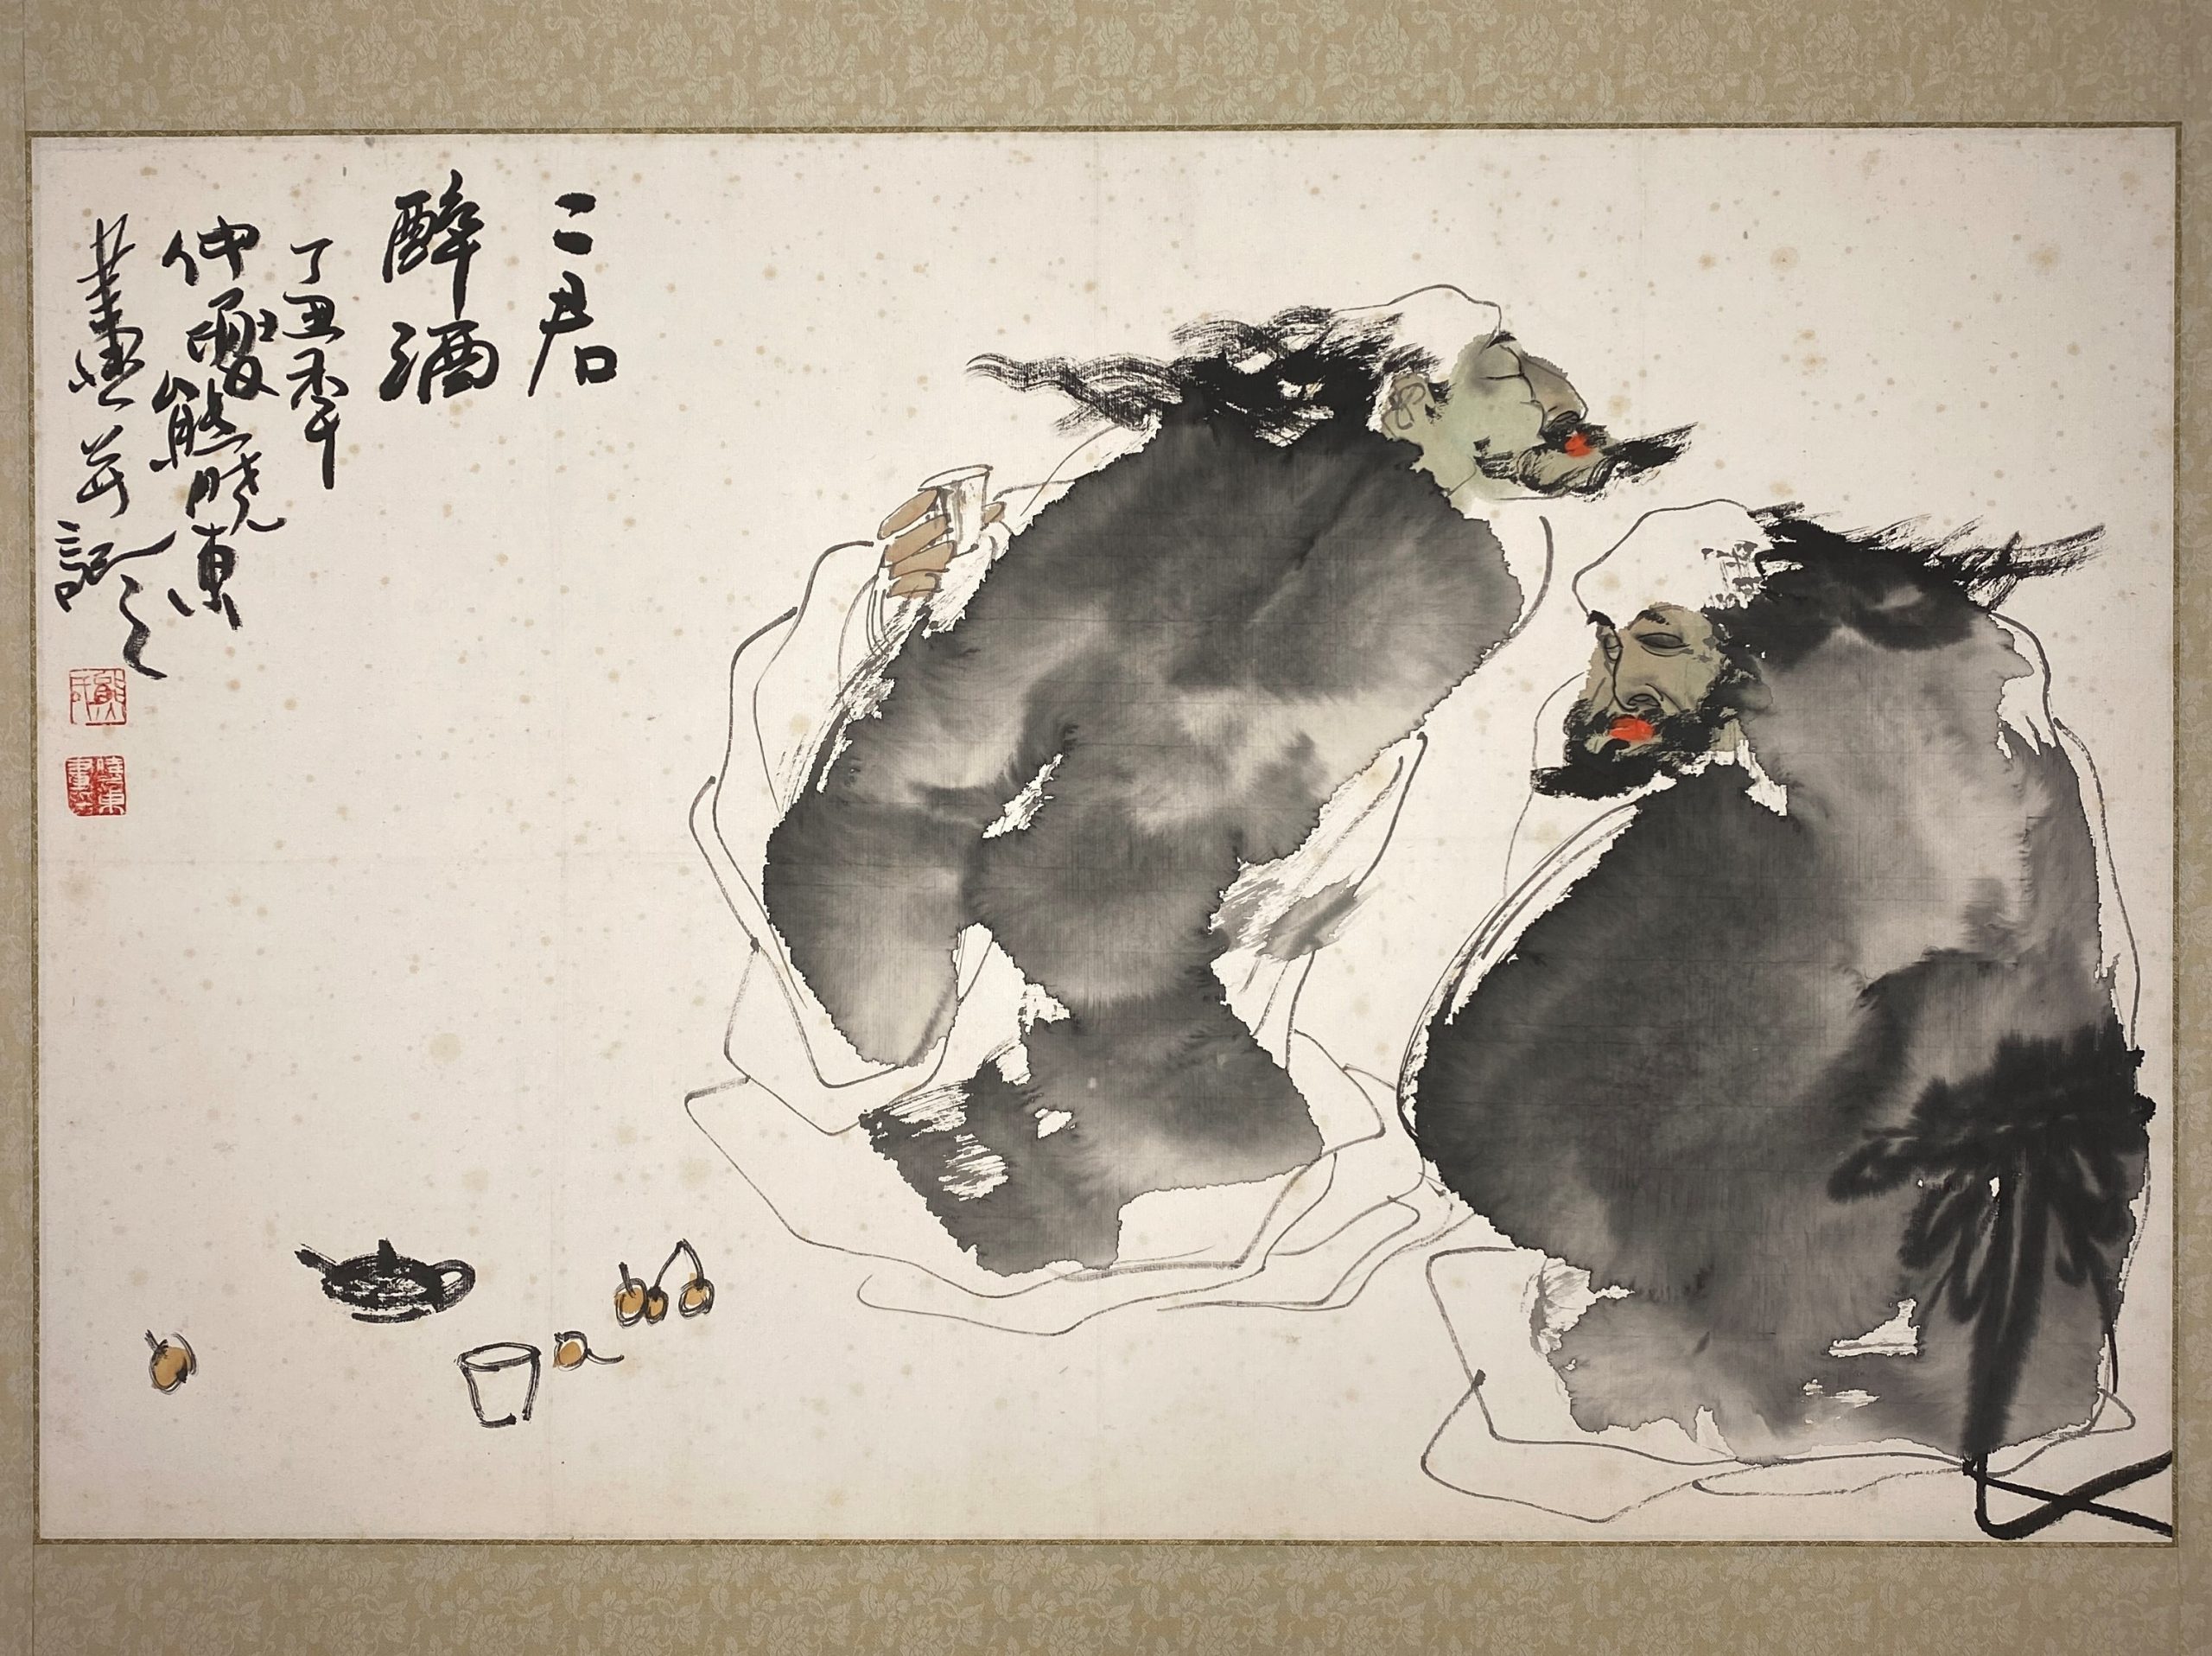 23646	「熊暁東」画 人物図 額等 計2件	45.5×69.5㎝ 67.5×69㎝